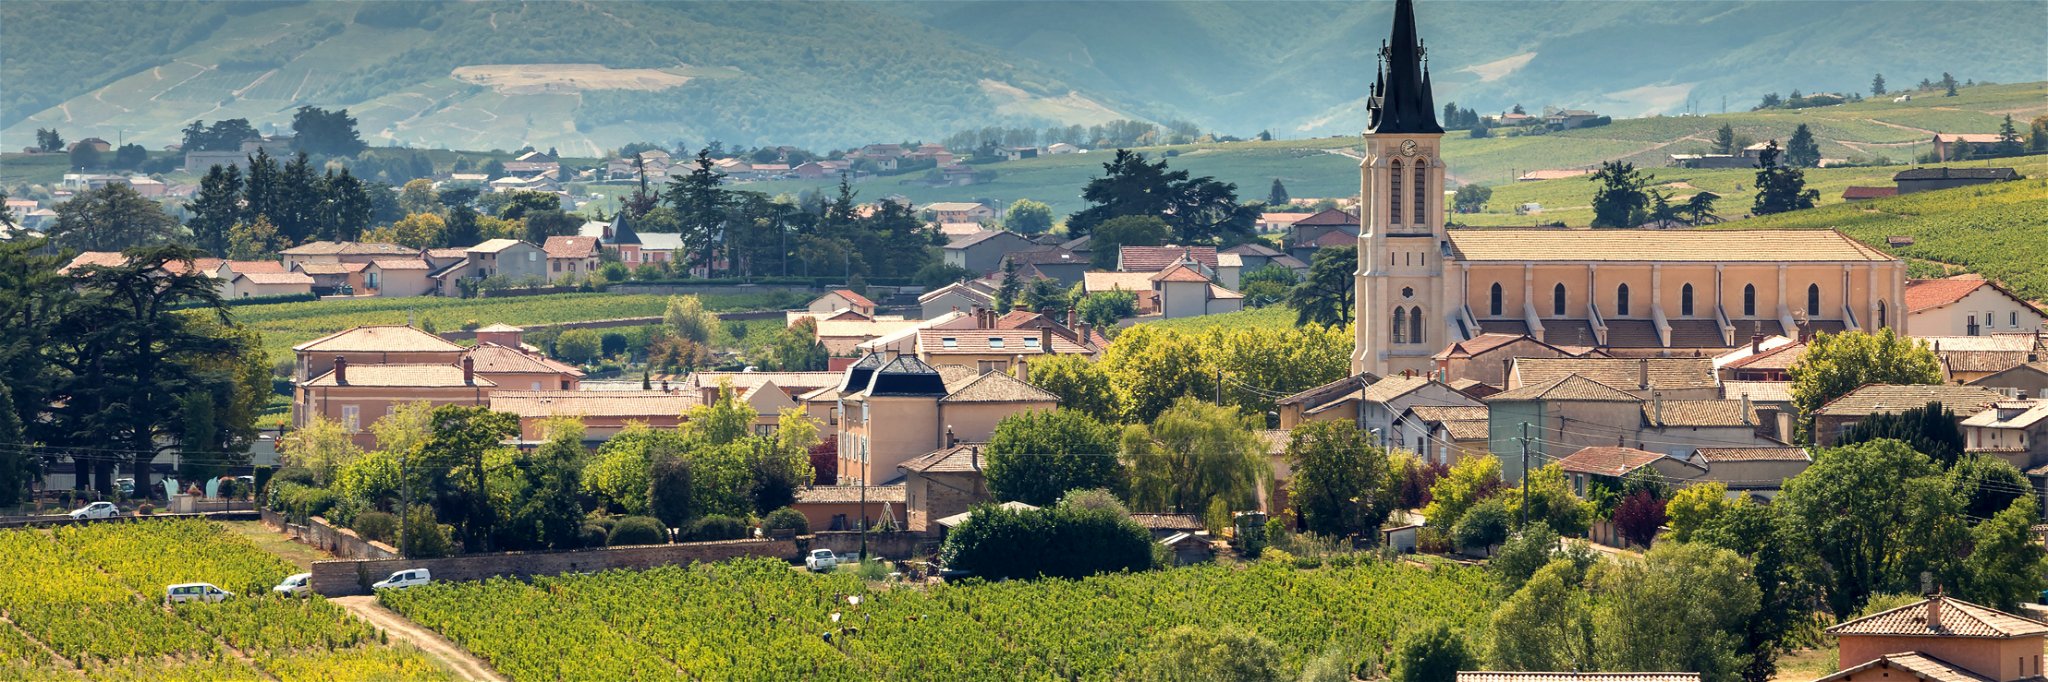 Die Gemeinde Fleurie ist einer der Orte, an denen das Beaujolais nicht nur landschaftlich besonders malerisch ist, sondern auch Spitzenweine hervorbringen kann.